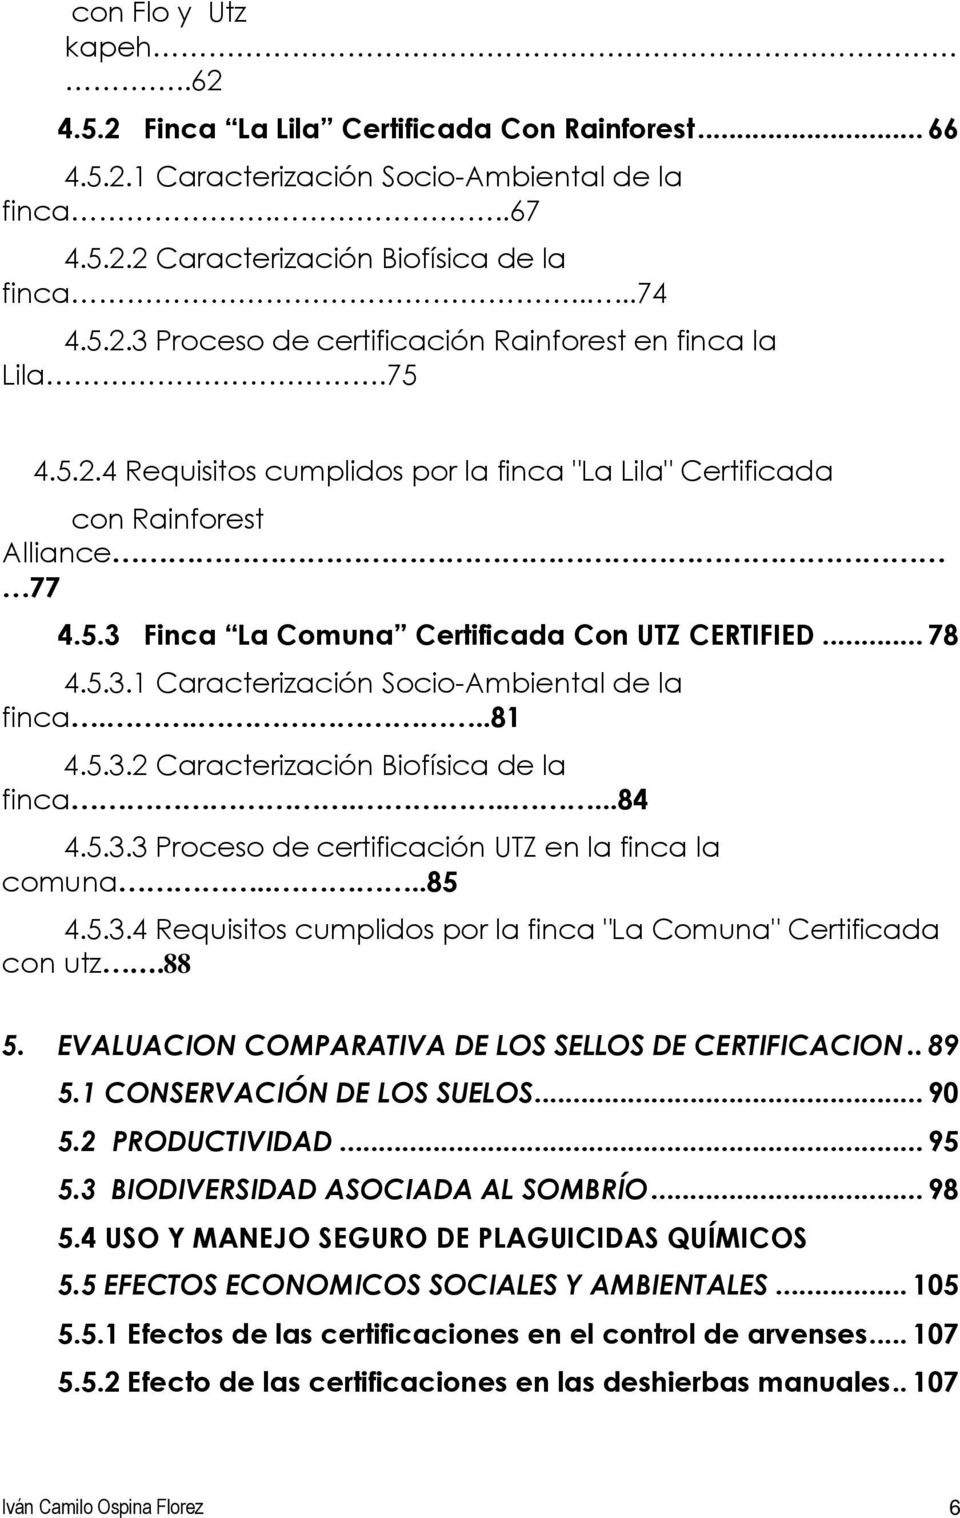 ...81 4.5.3.2 Caracterización Biofísica de la finca......84 4.5.3.3 Proceso de certificación UTZ en la finca la comuna....85 4.5.3.4 Requisitos cumplidos por la finca "La Comuna" Certificada con utz.